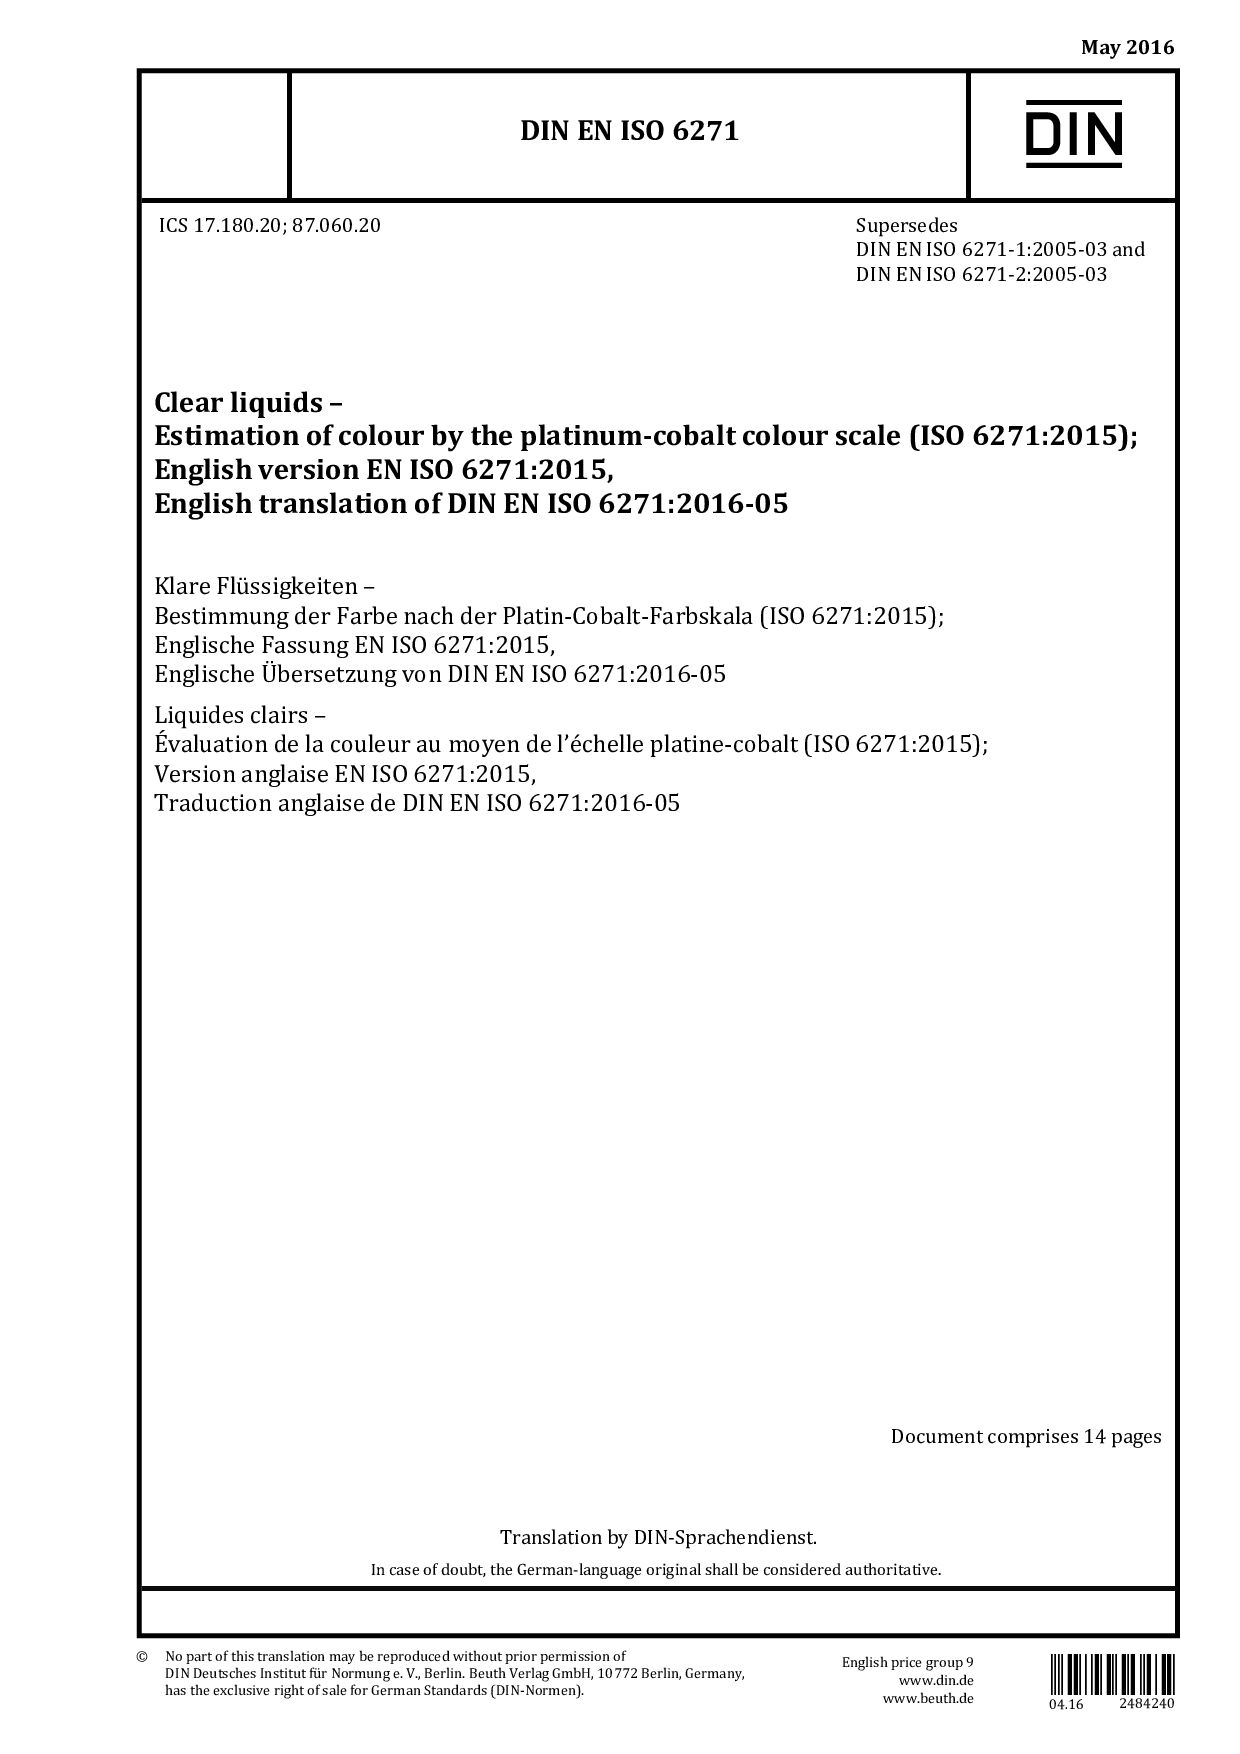 DIN EN ISO 6271:2016-05封面图